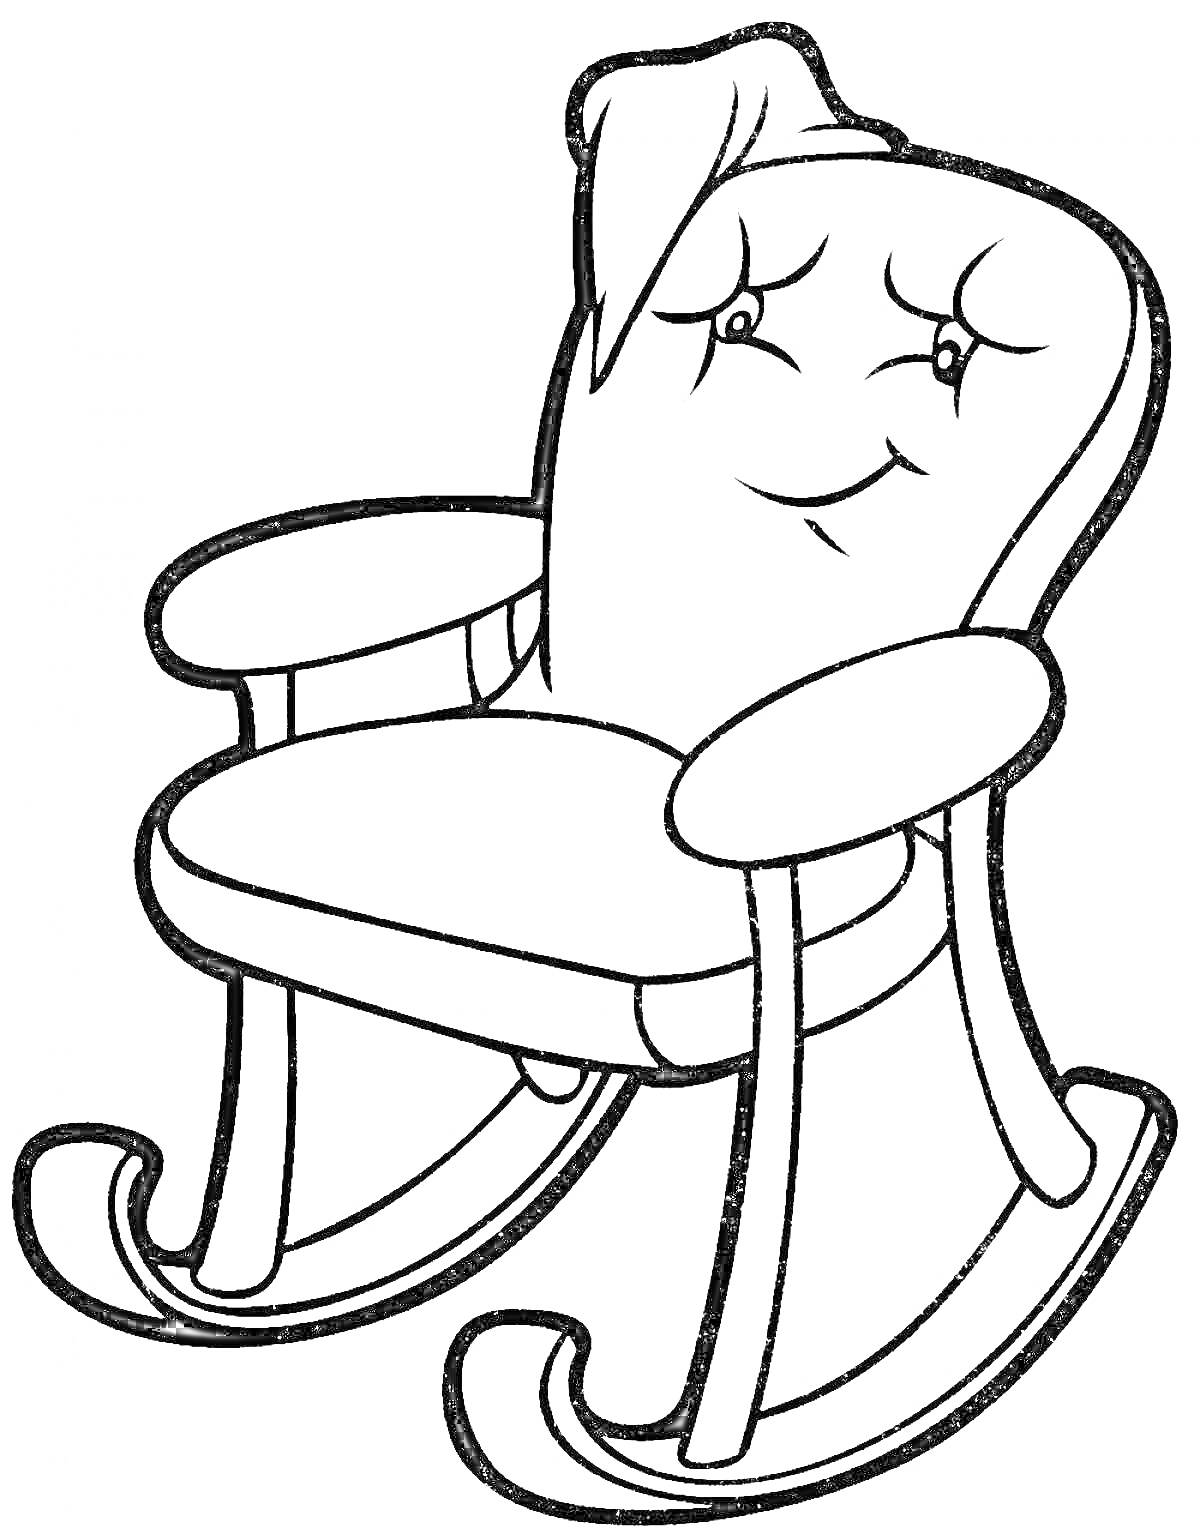 Кресло-качалка с лицом и платком на спинке